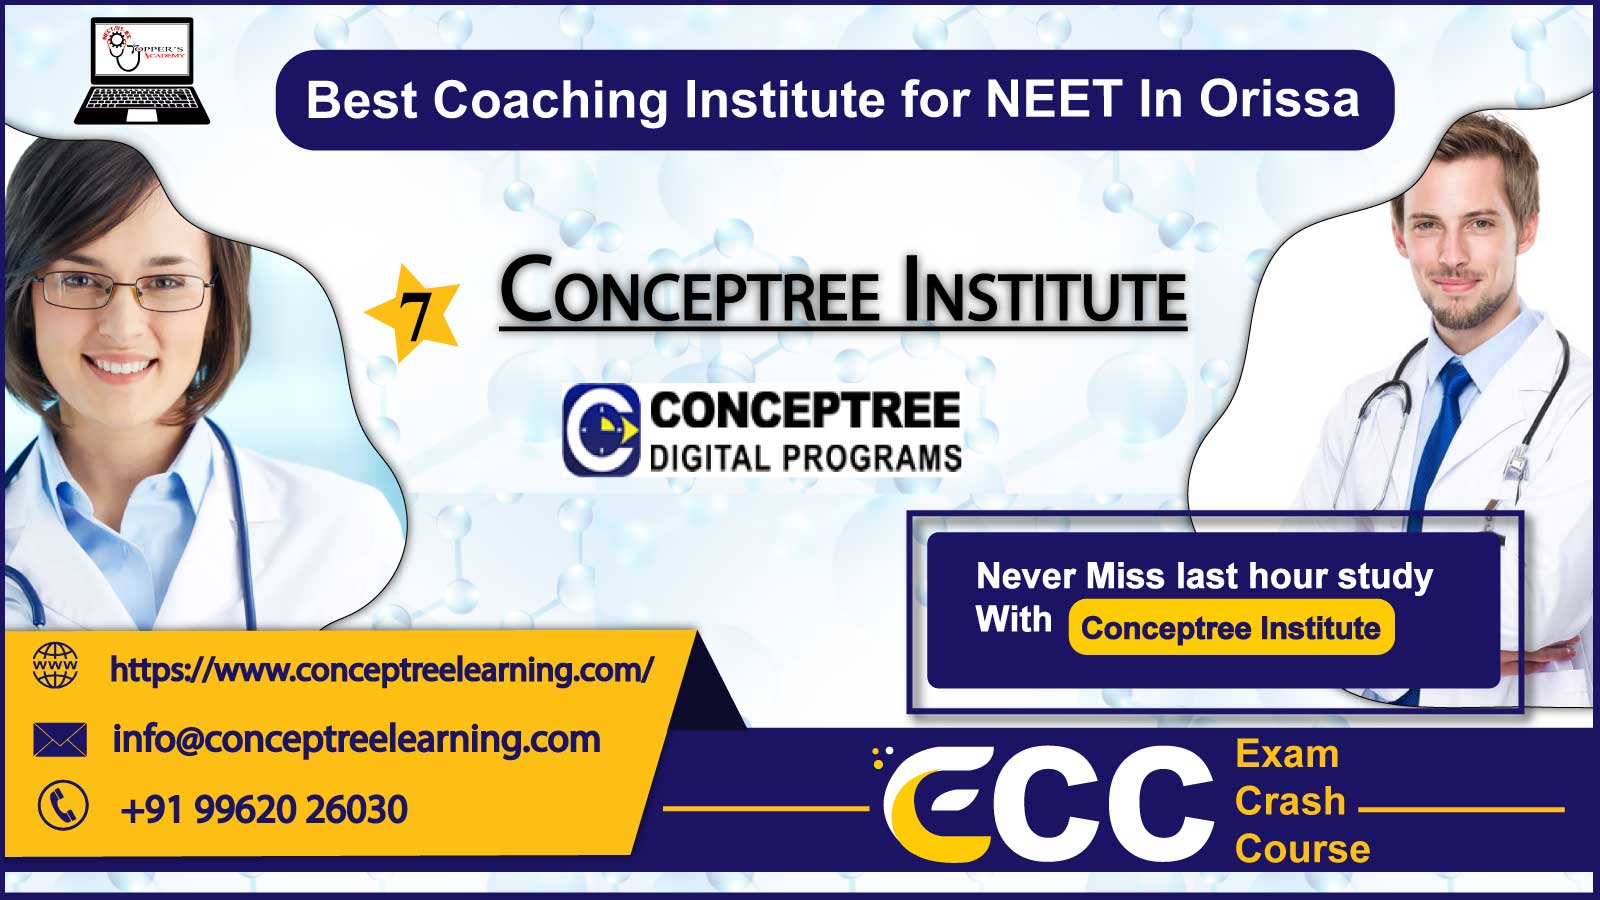 Conceptree NEET Coaching Institute In Orissa